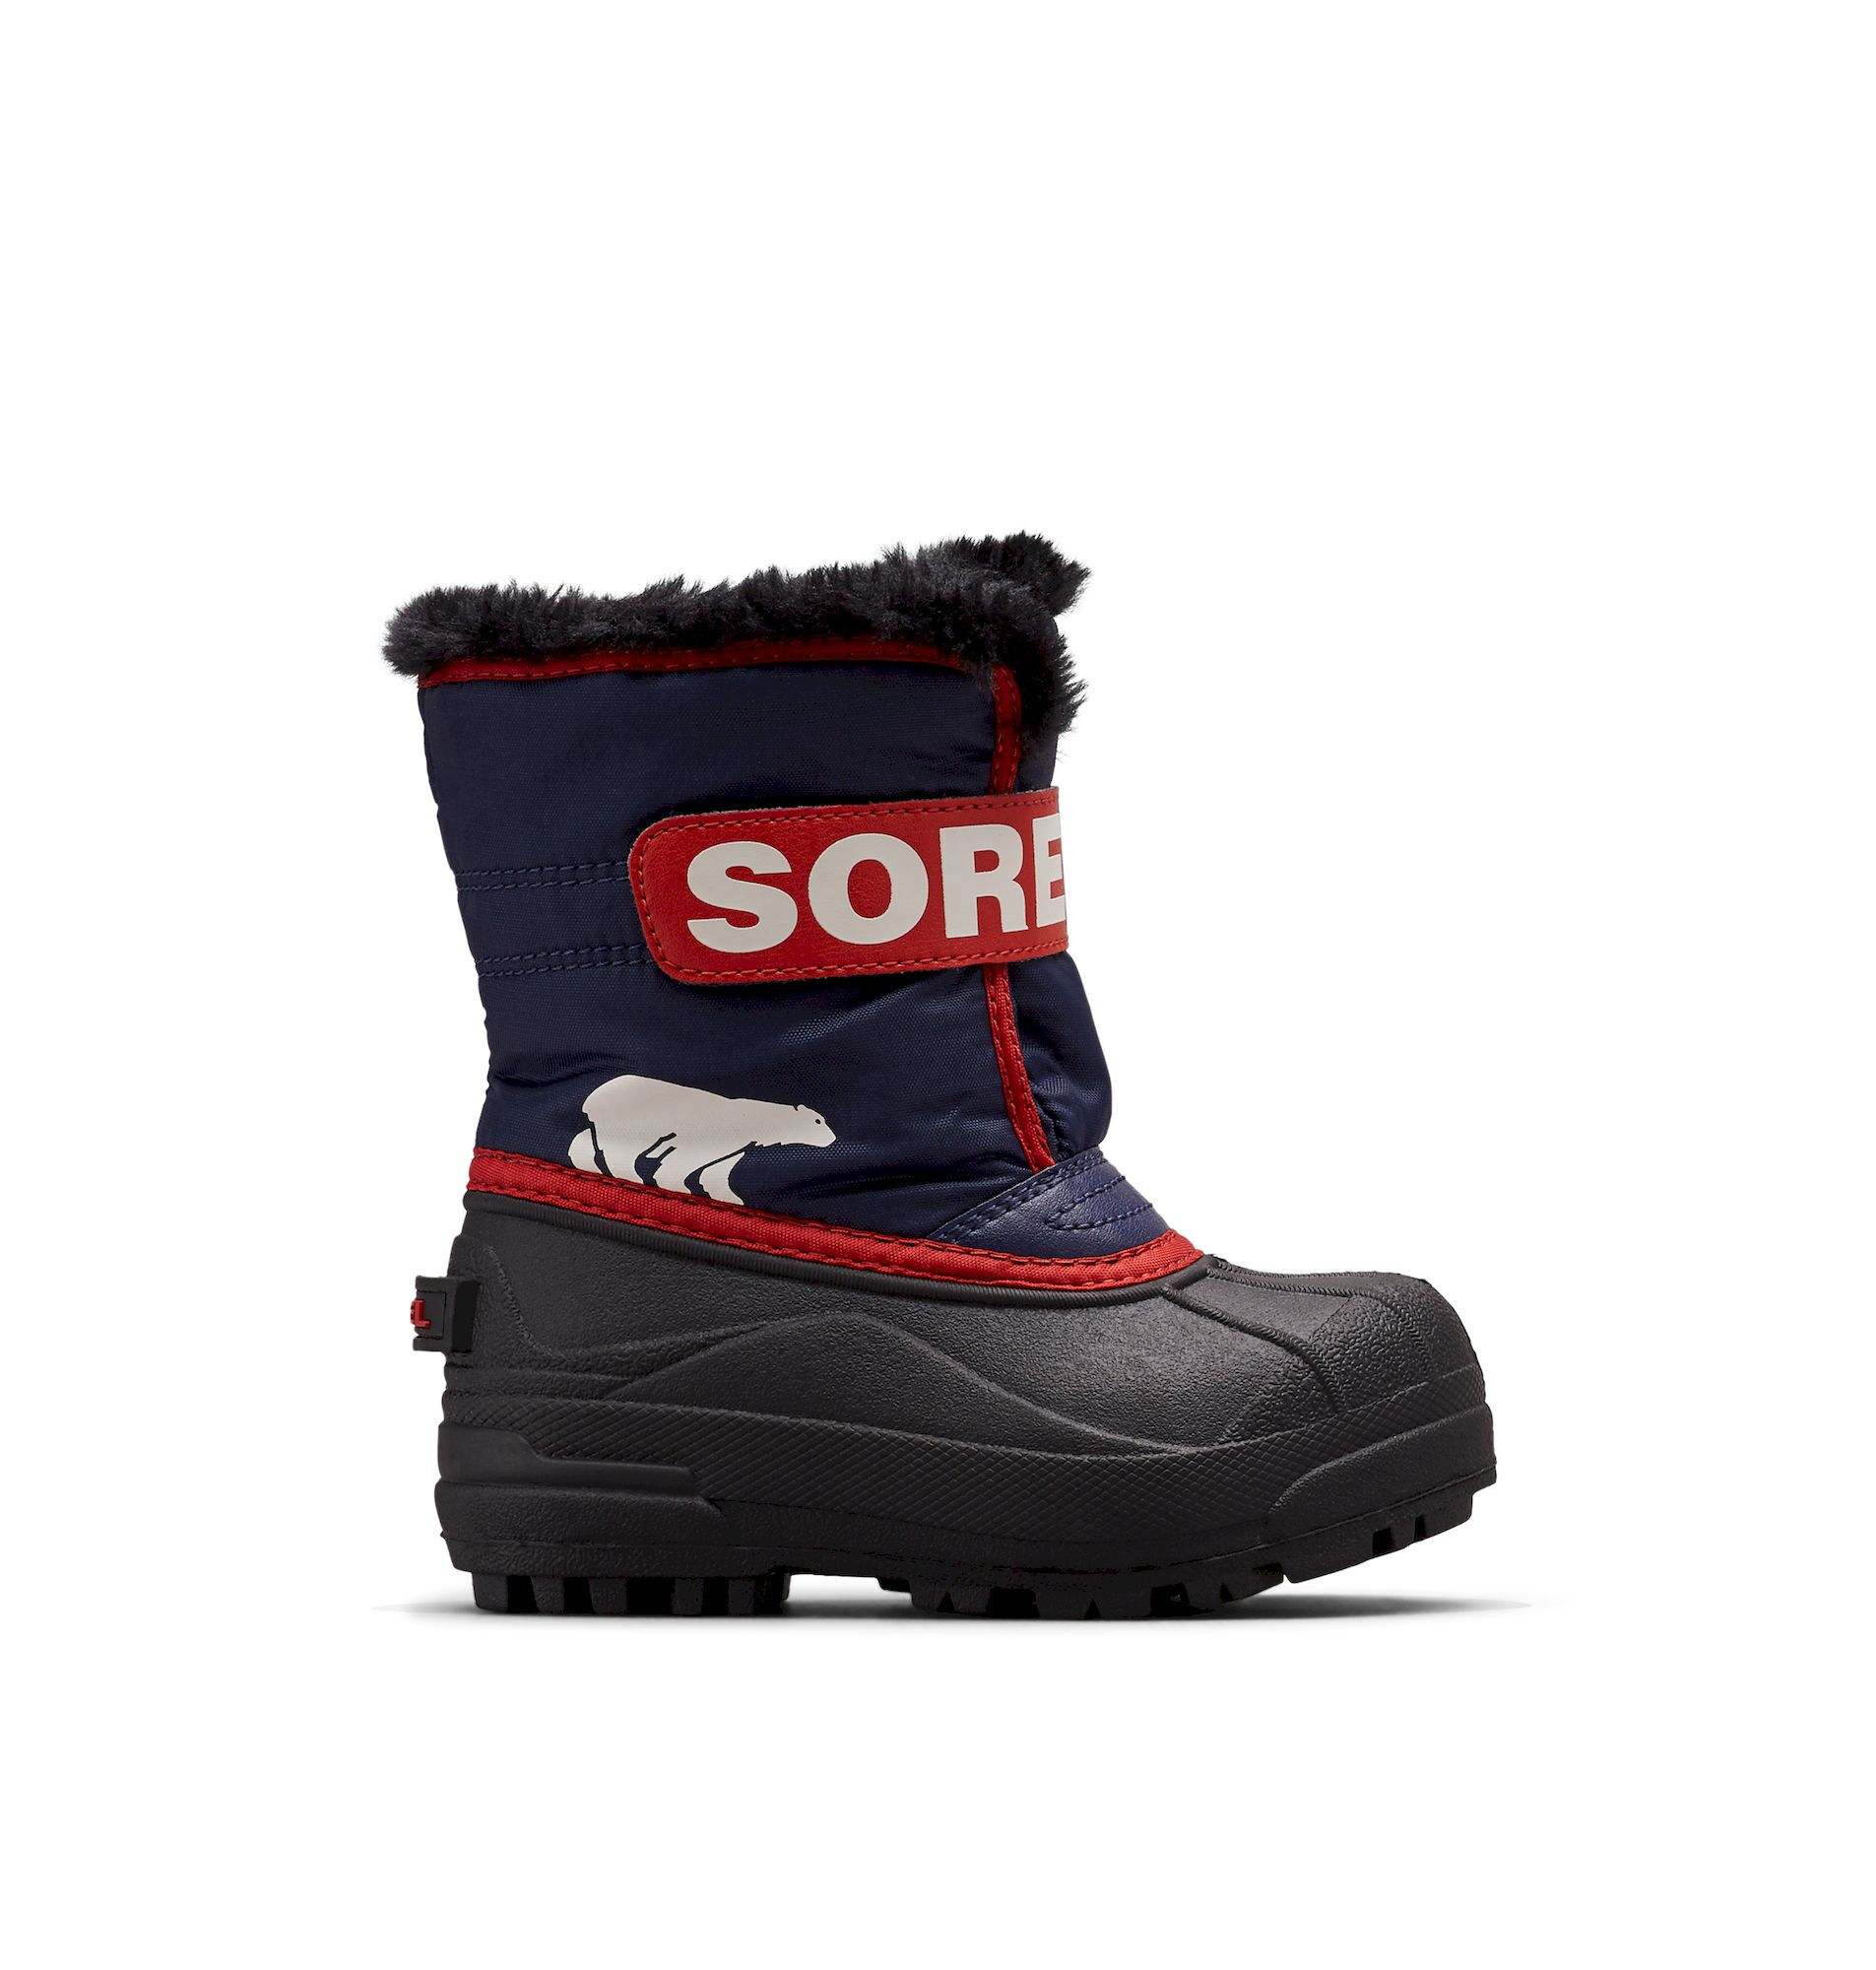 Sorel Snow Commander - Winter boots - Kids